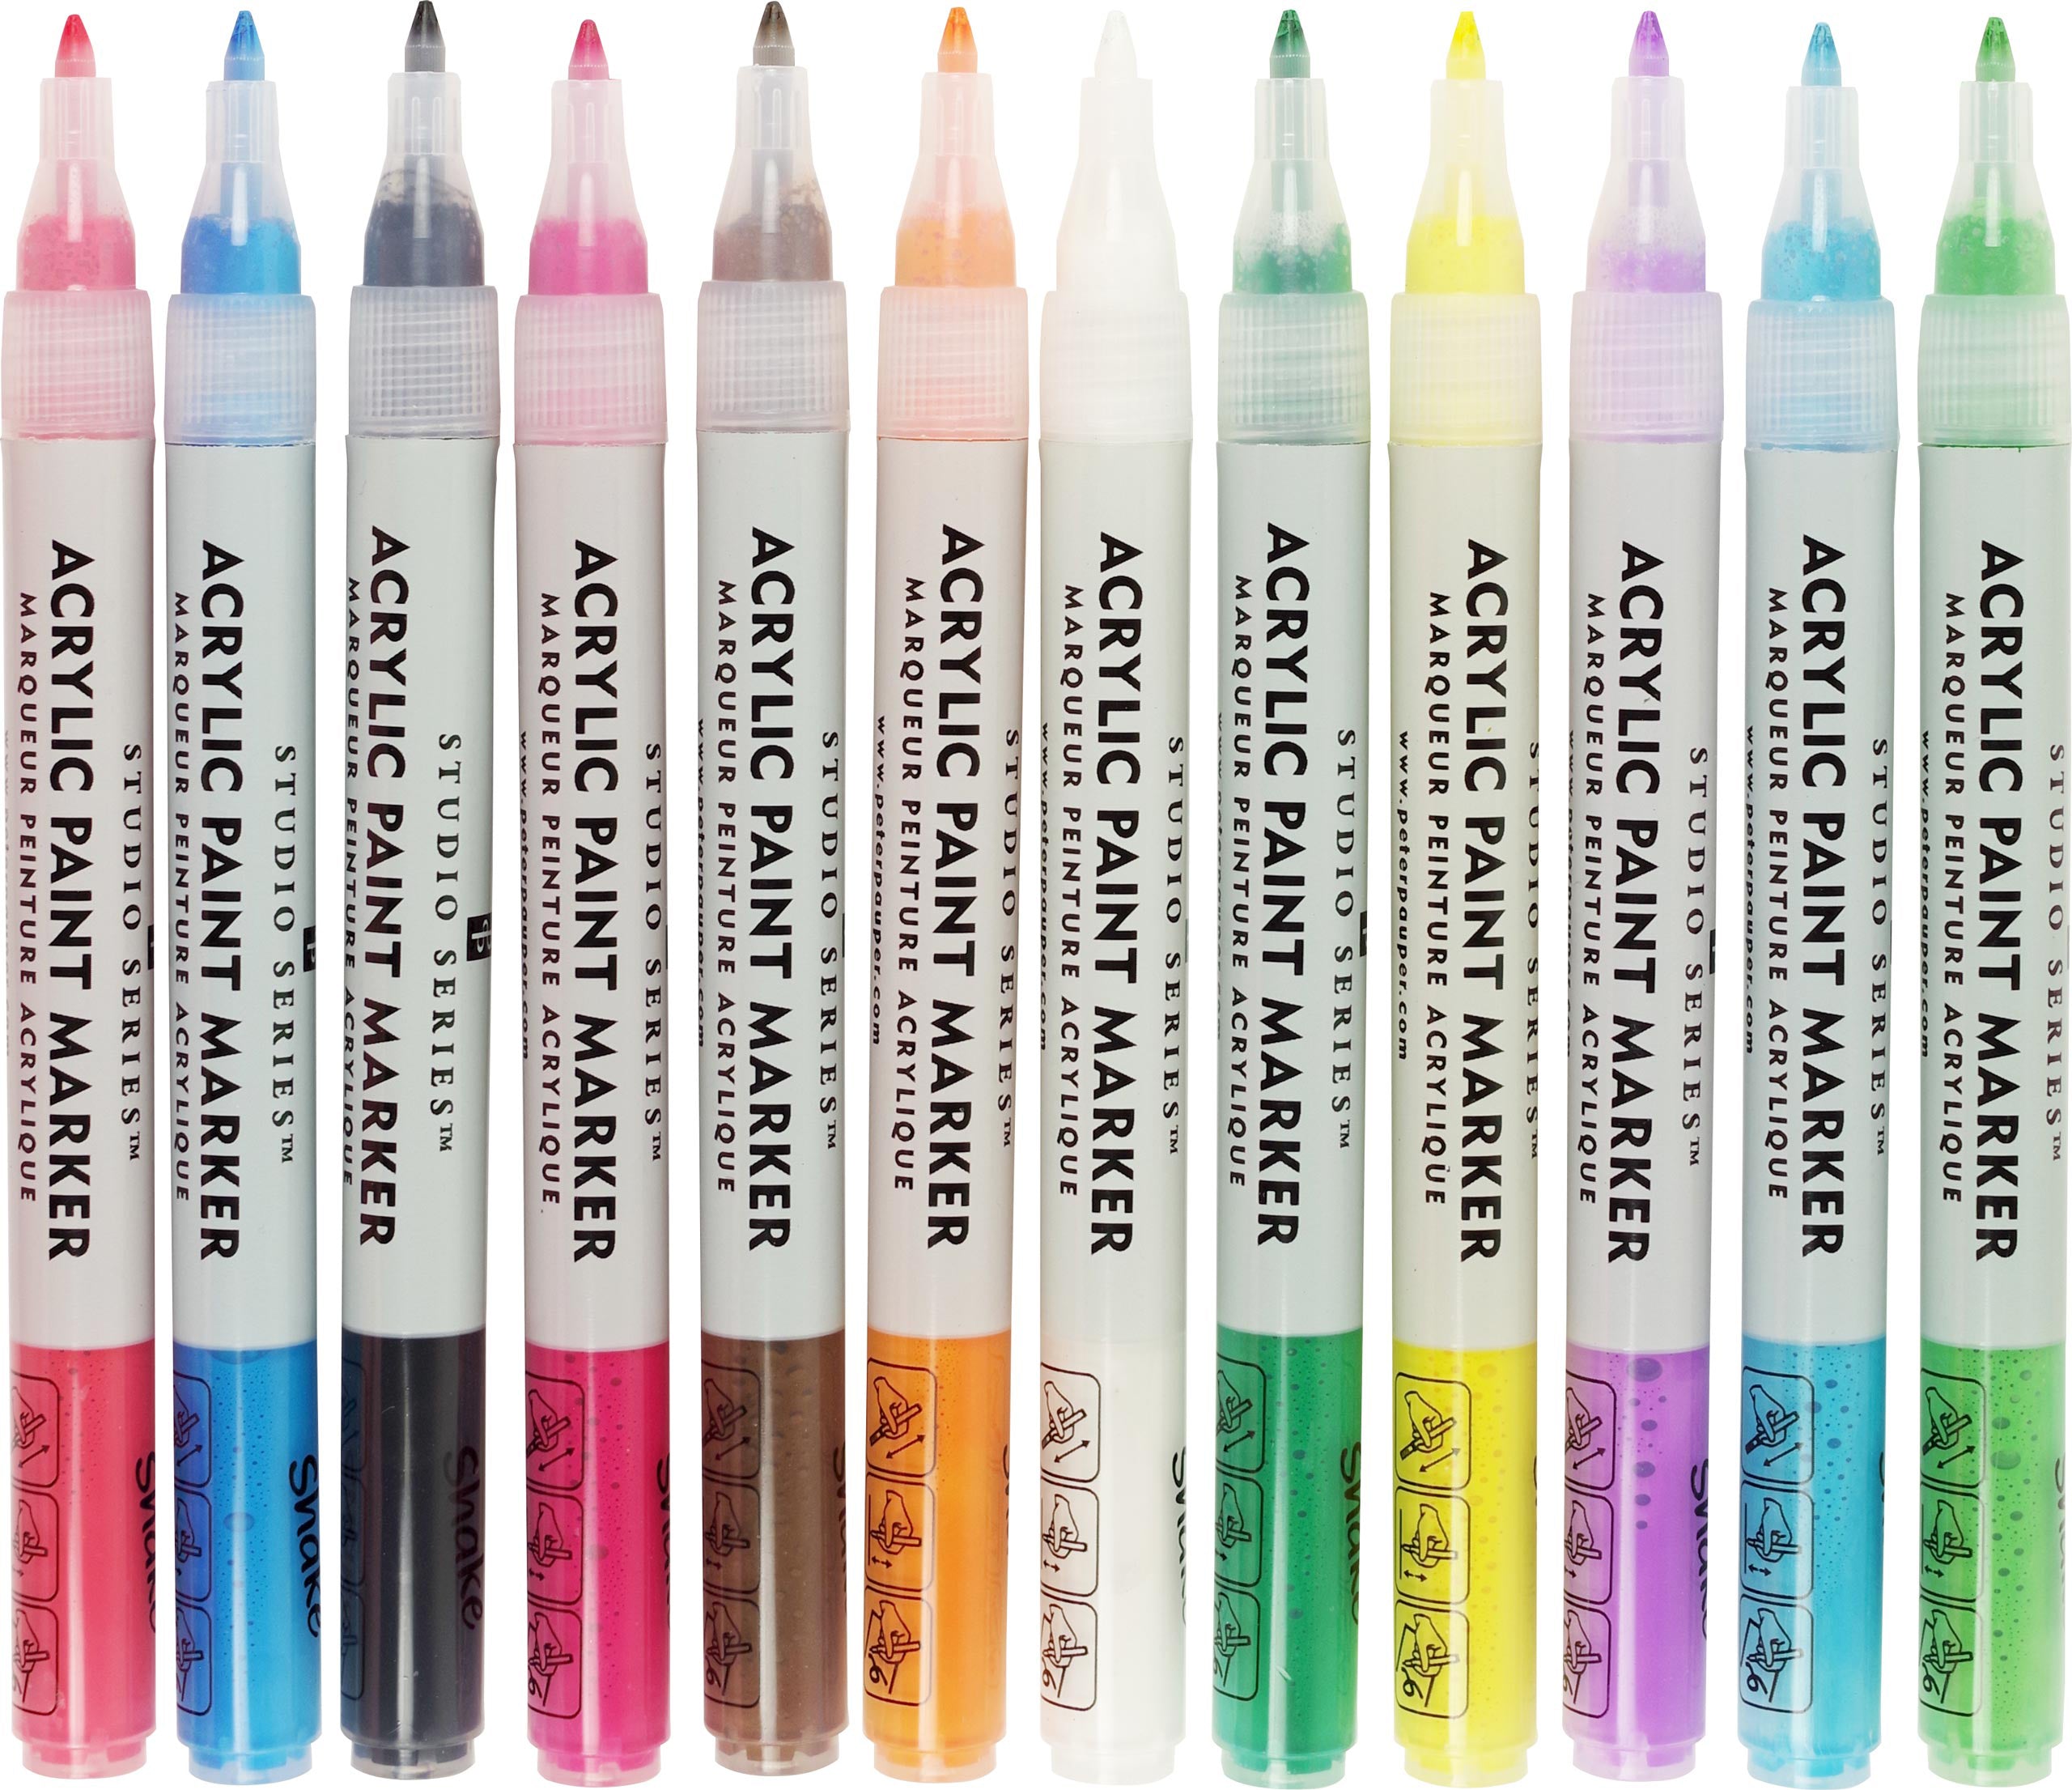 Studio Series Watercolor Brush Pens - Set of 24 by Peter Pauper